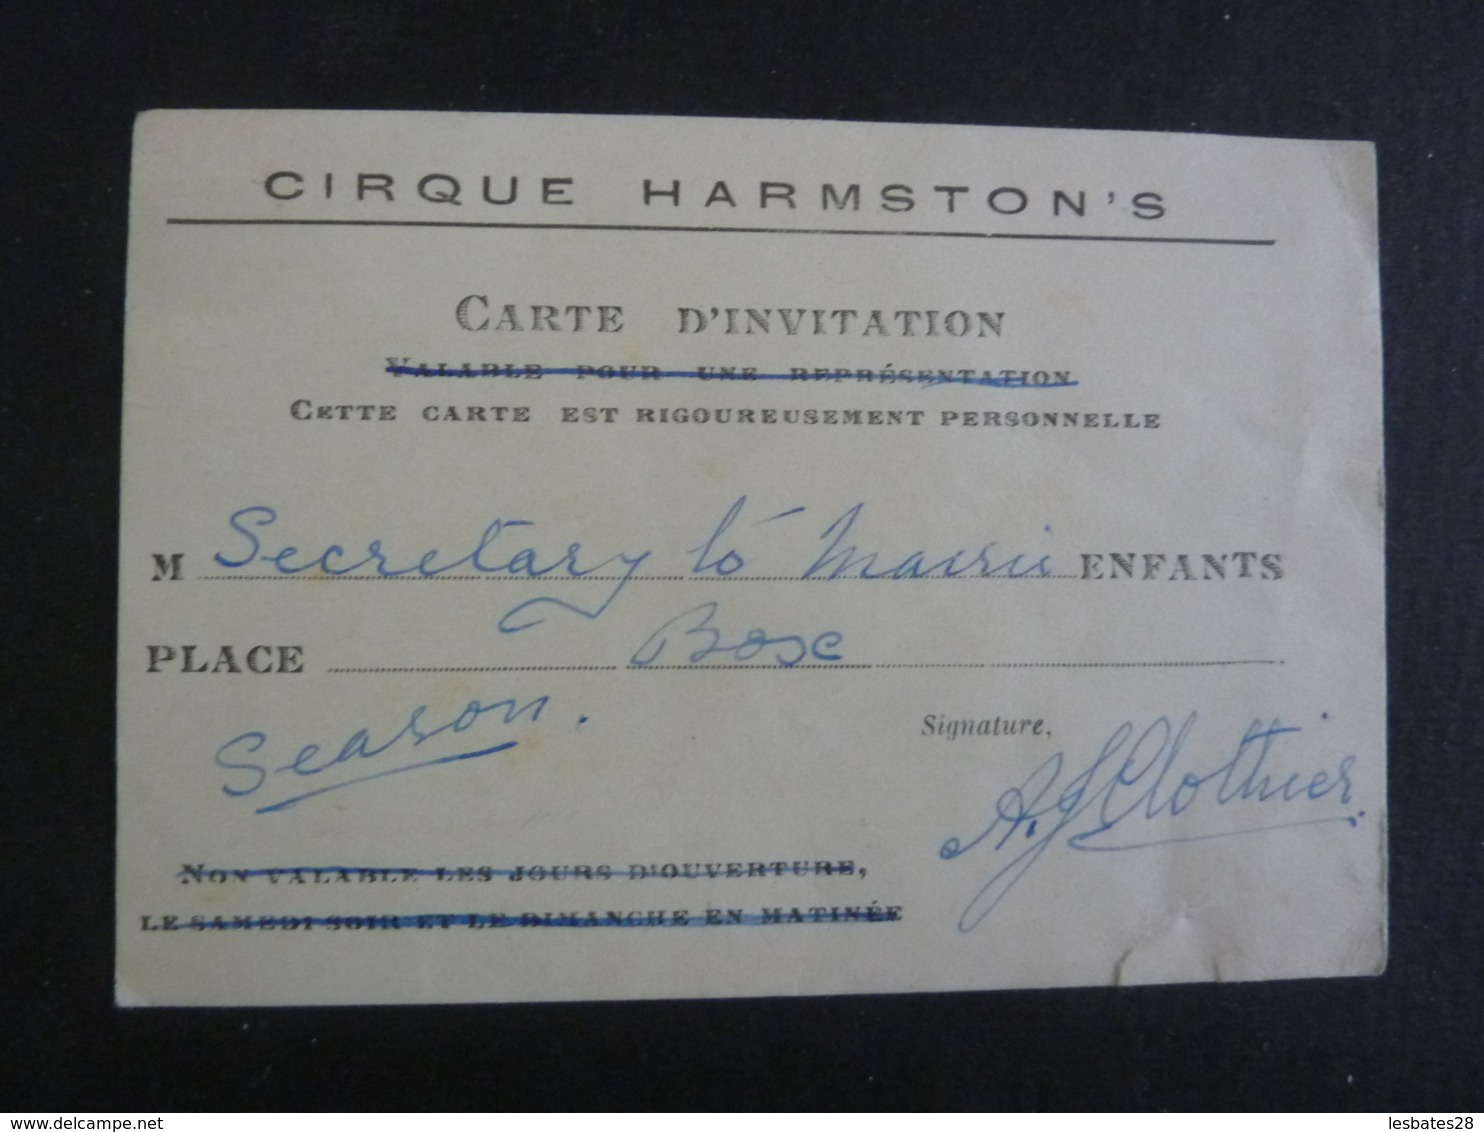 CARTE D'INVITATION  CIRQUE HARMSTON'S RIGOUREUSEMENT PERSONNEL   1930-1940  2018 Alb 5 - Biglietti D'ingresso